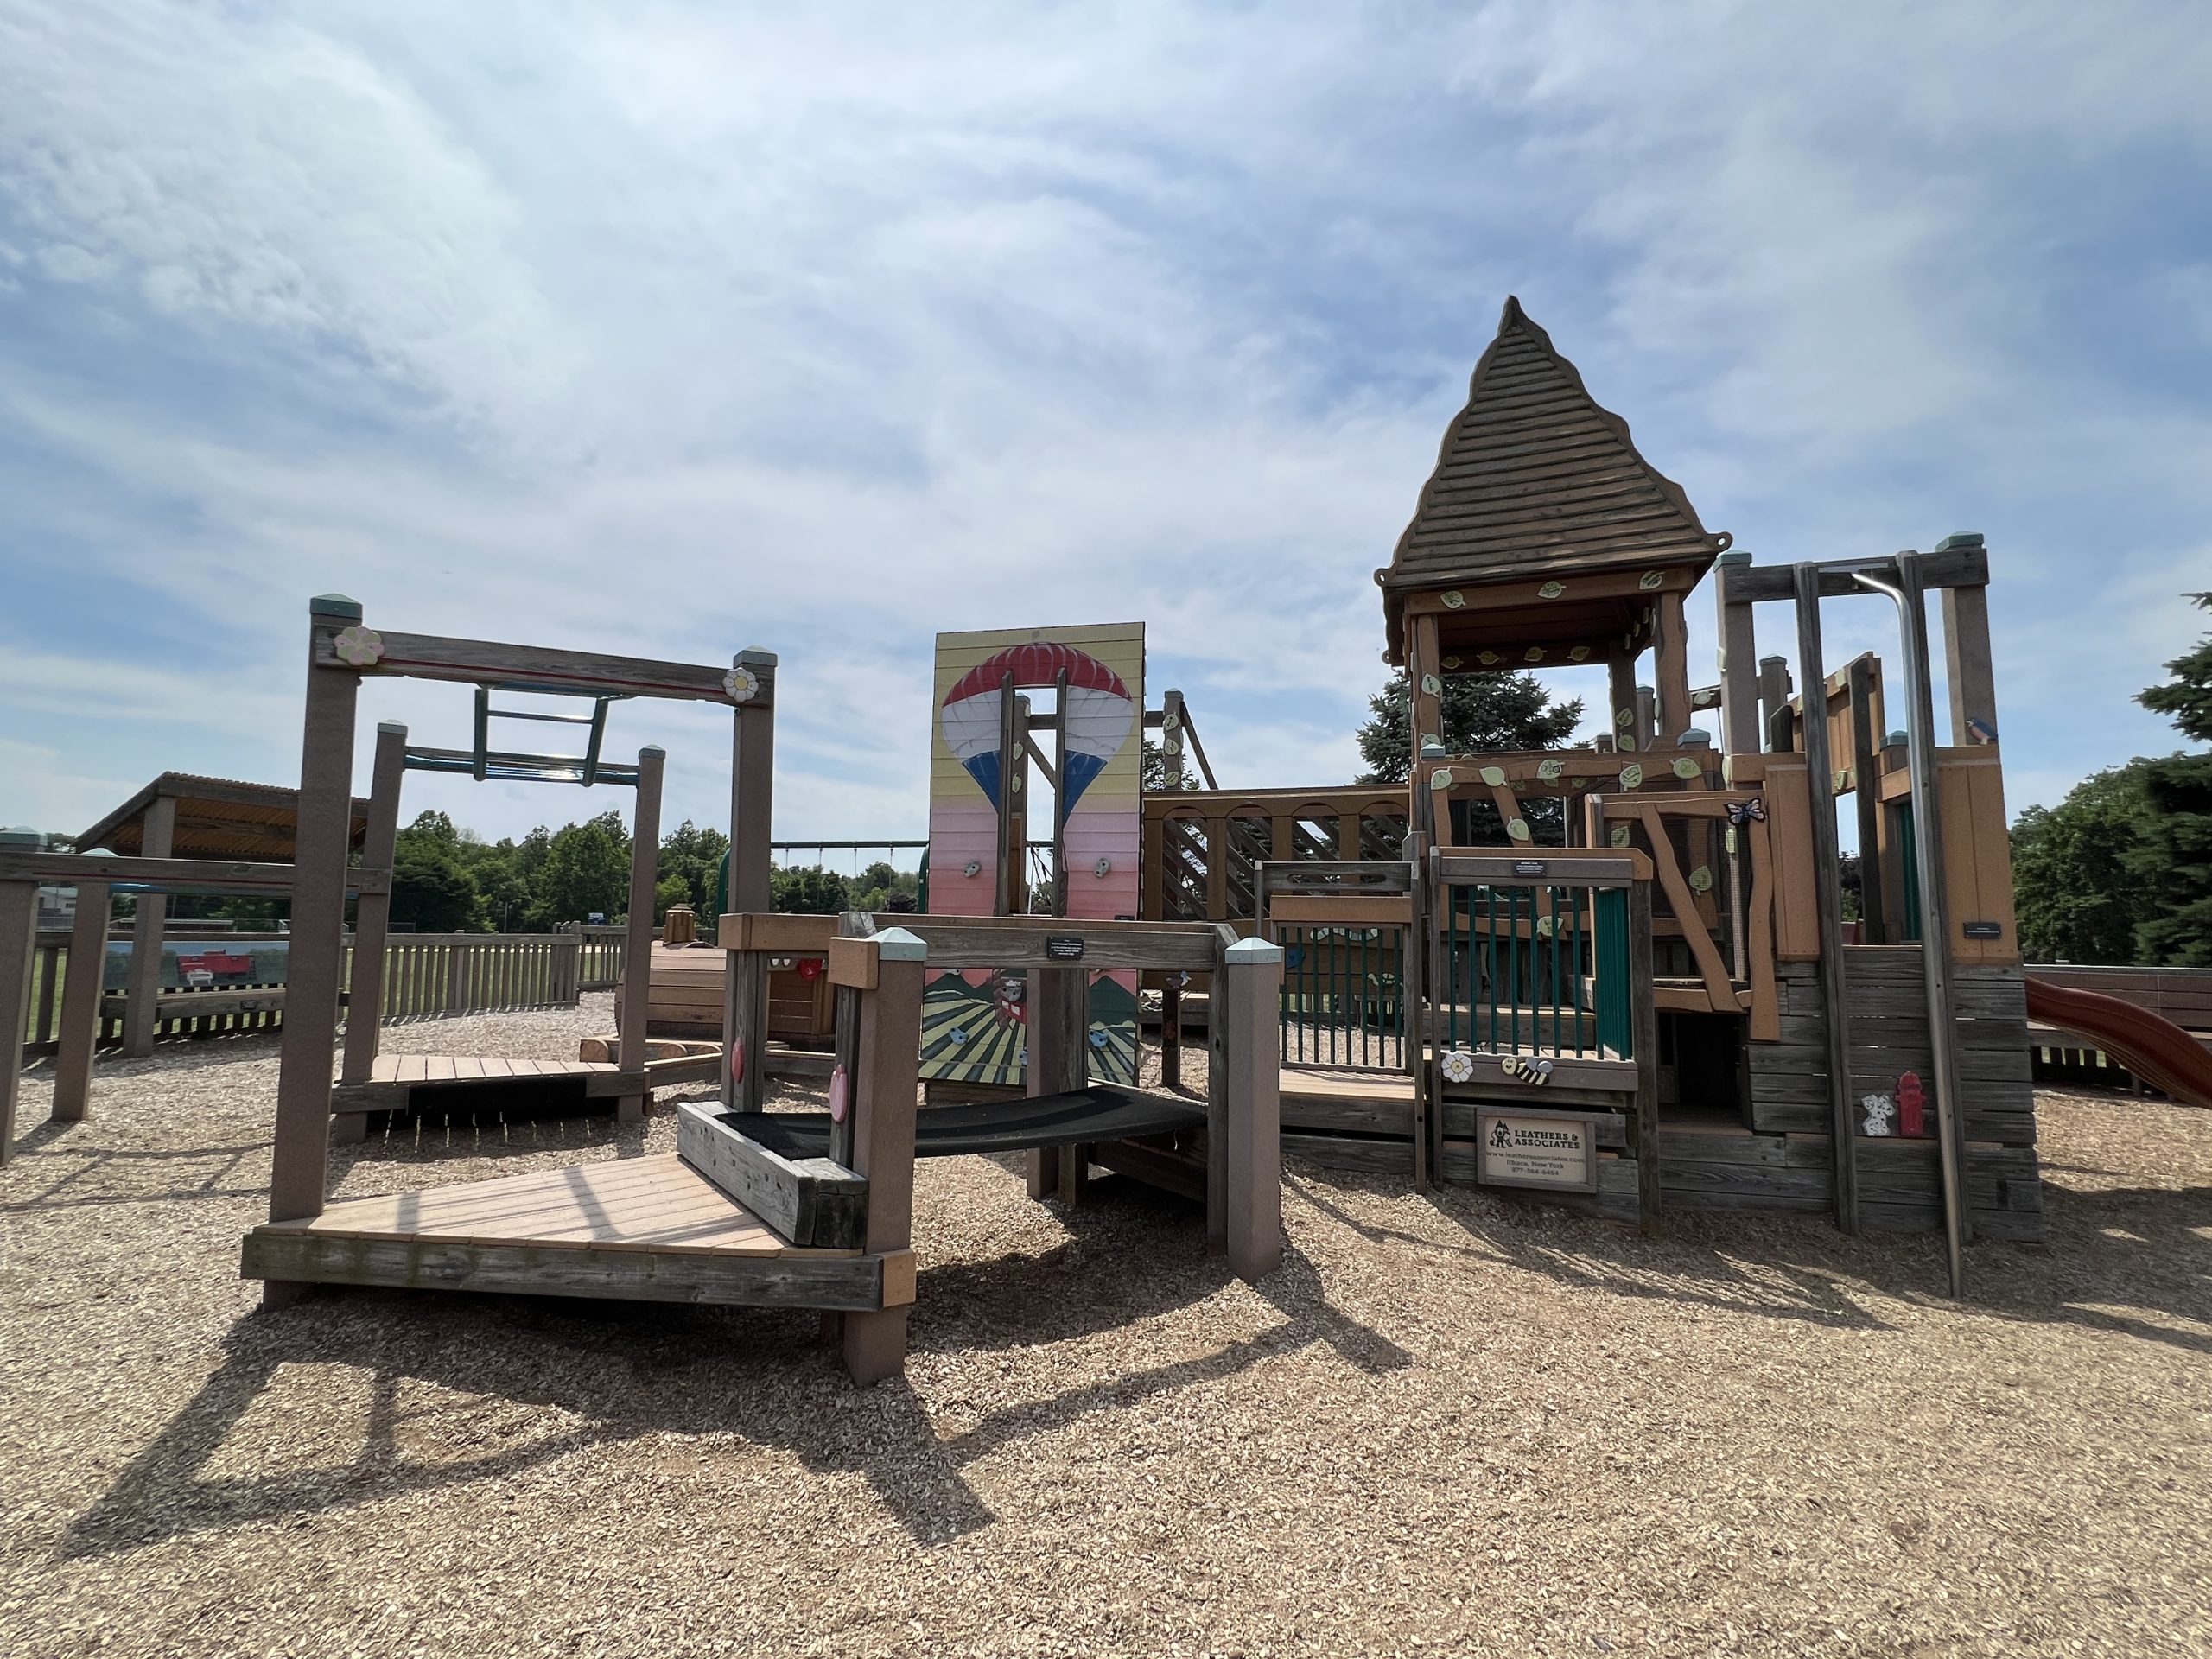 Sycamore Park Playground in Blairstown NJ - Older kid playground - WIDE shot